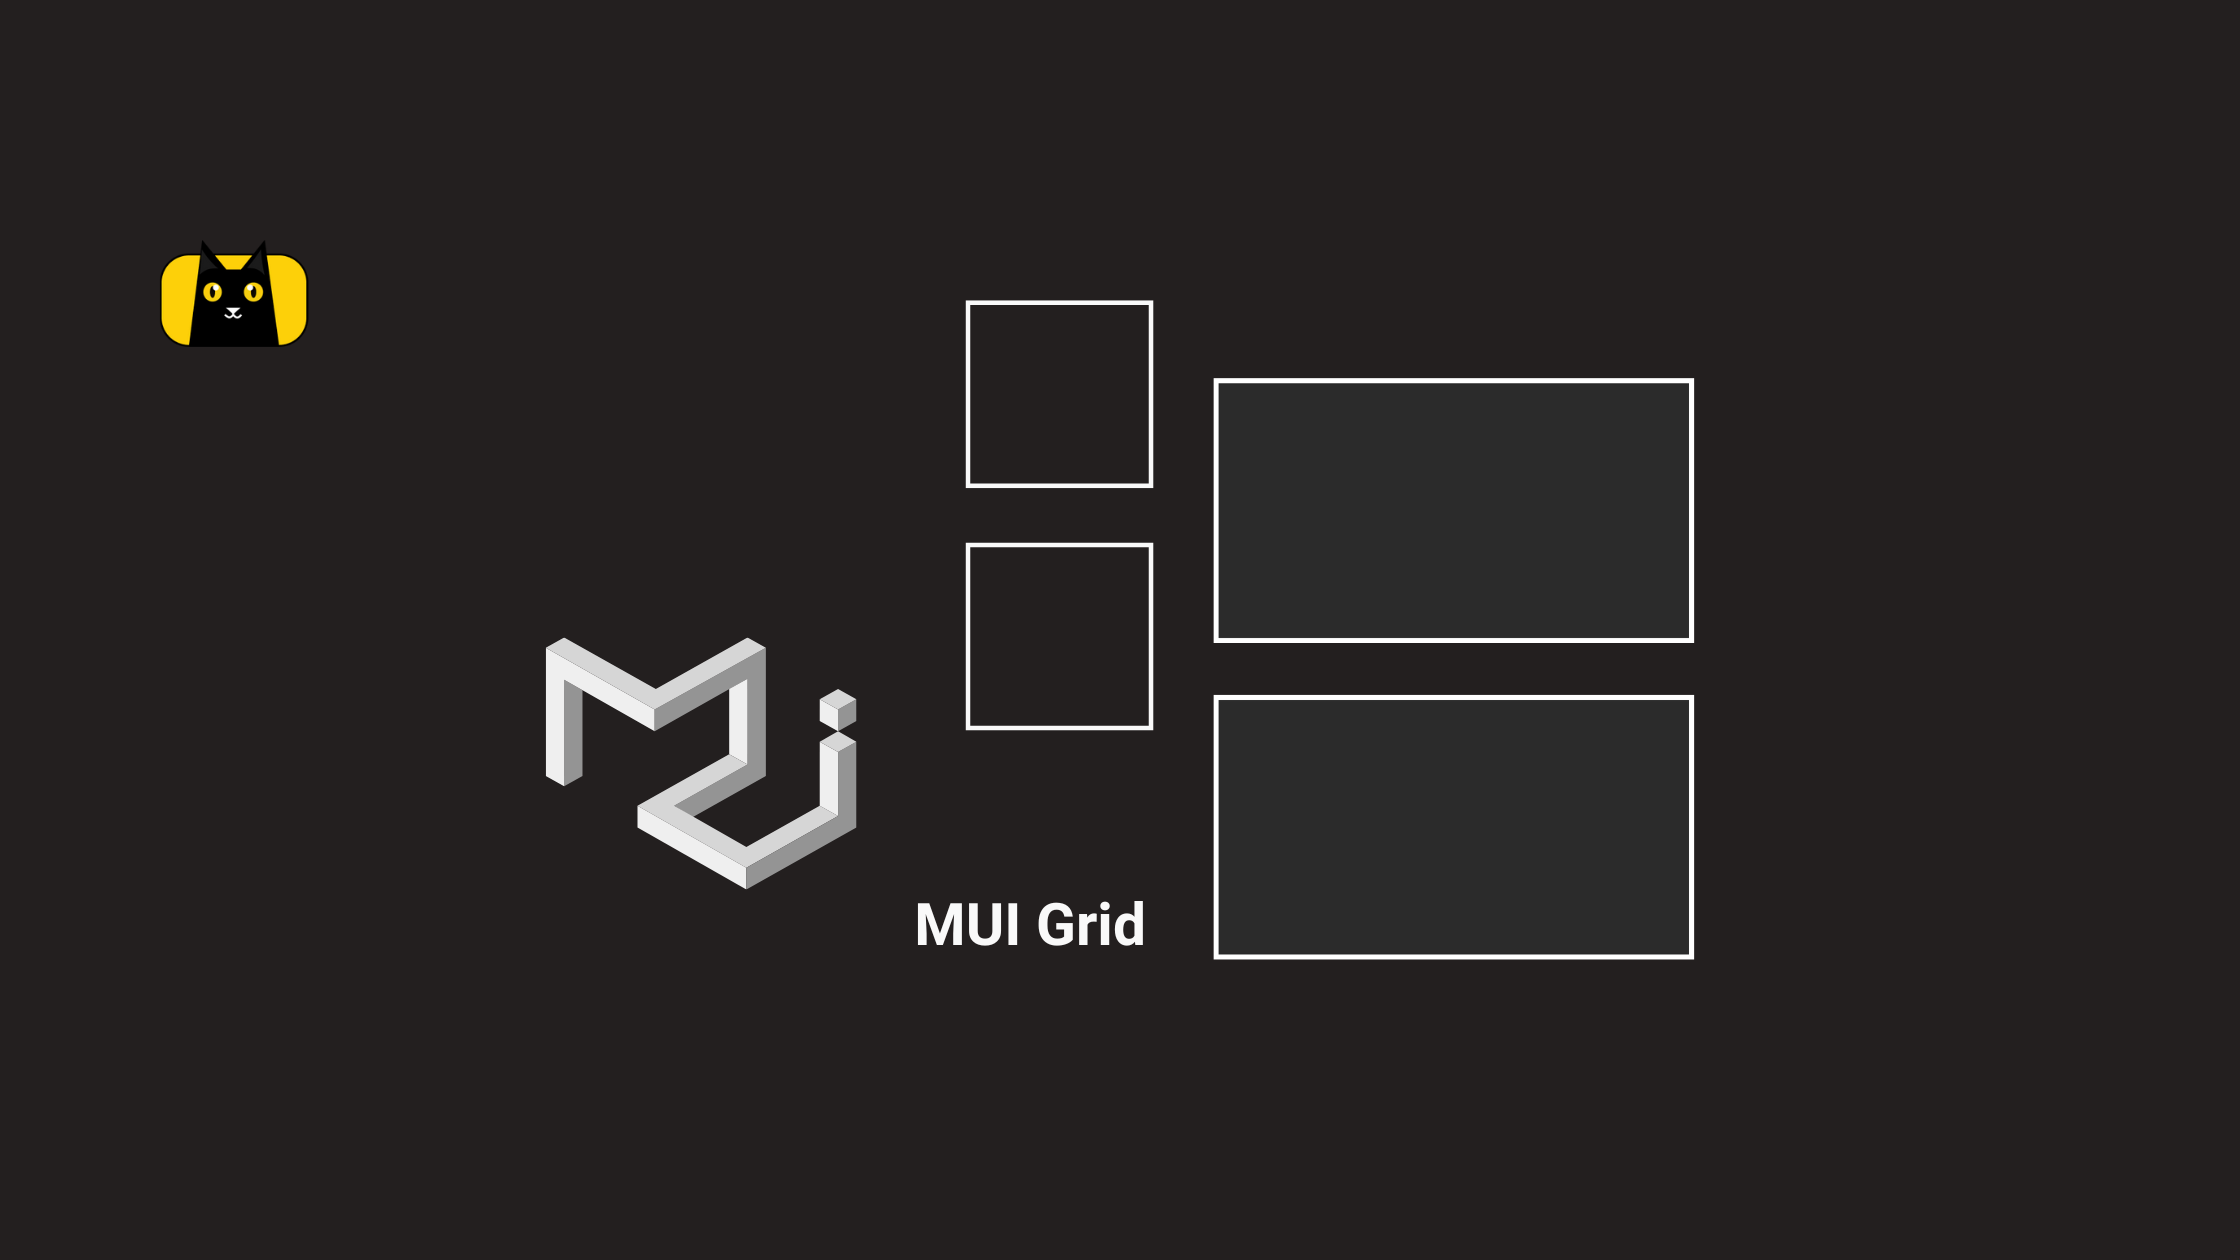 Grid - một hệ thống lưới sắp xếp dữ liệu nổi tiếng của Material UI, được sử dụng phổ biến trong thiết kế giao diện. Với Material UI Grid, việc sắp xếp nội dung trên trang web sẽ trở nên đơn giản và thuận tiện hơn bao giờ hết. Hãy xem hình ảnh liên quan để khám phá thêm về tính năng đặc biệt của Grid.